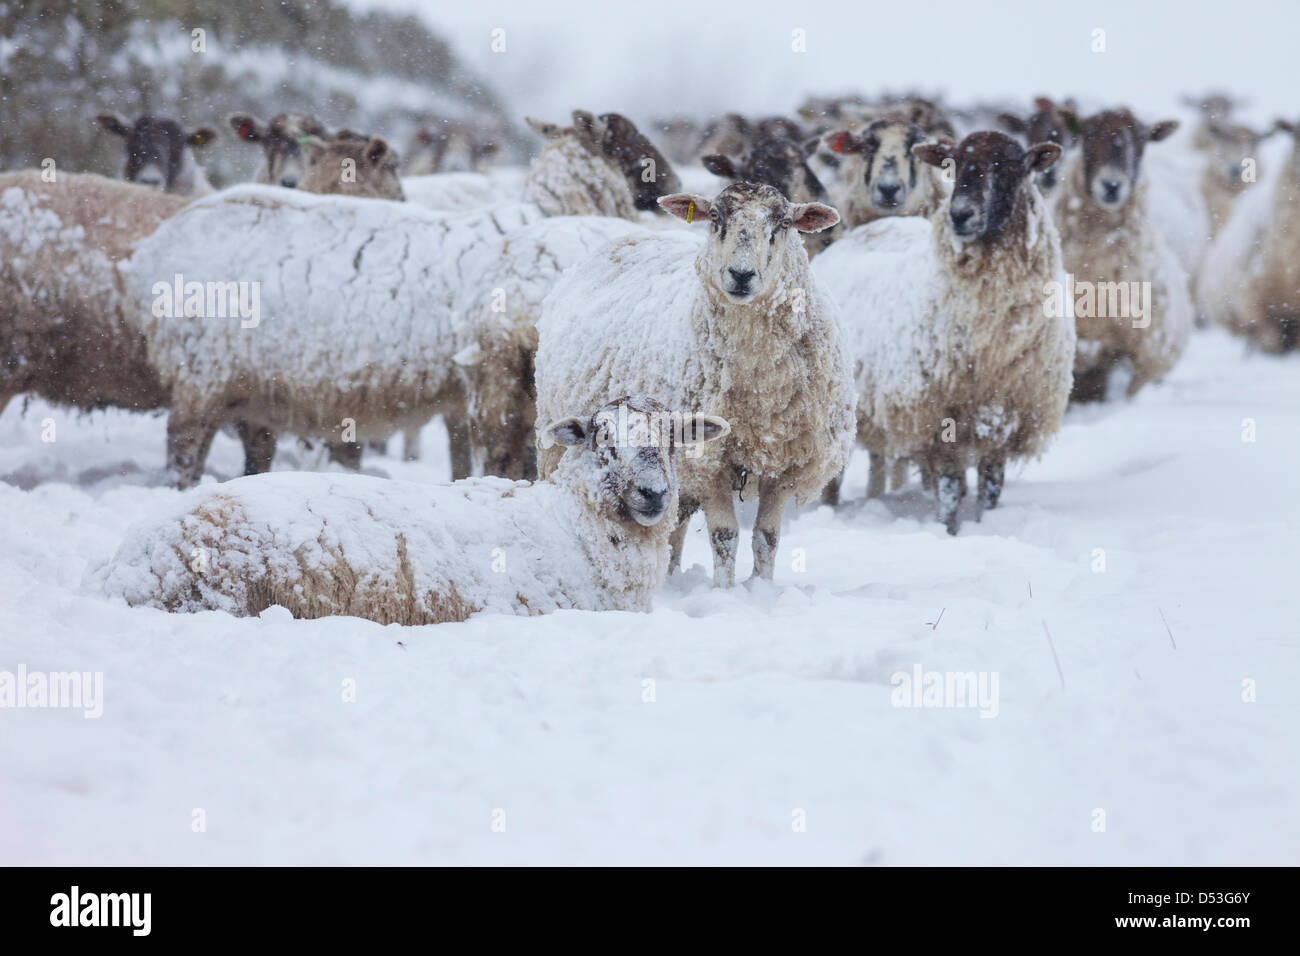 County Durham Großbritannien. 23. März 2013 Schafe mit dem schweren Schneefall und Schneestürme, die die Gegend über Nacht getroffen zu bewältigen. Kredit: David Forster / Alamy Live Nachrichten Stockfoto